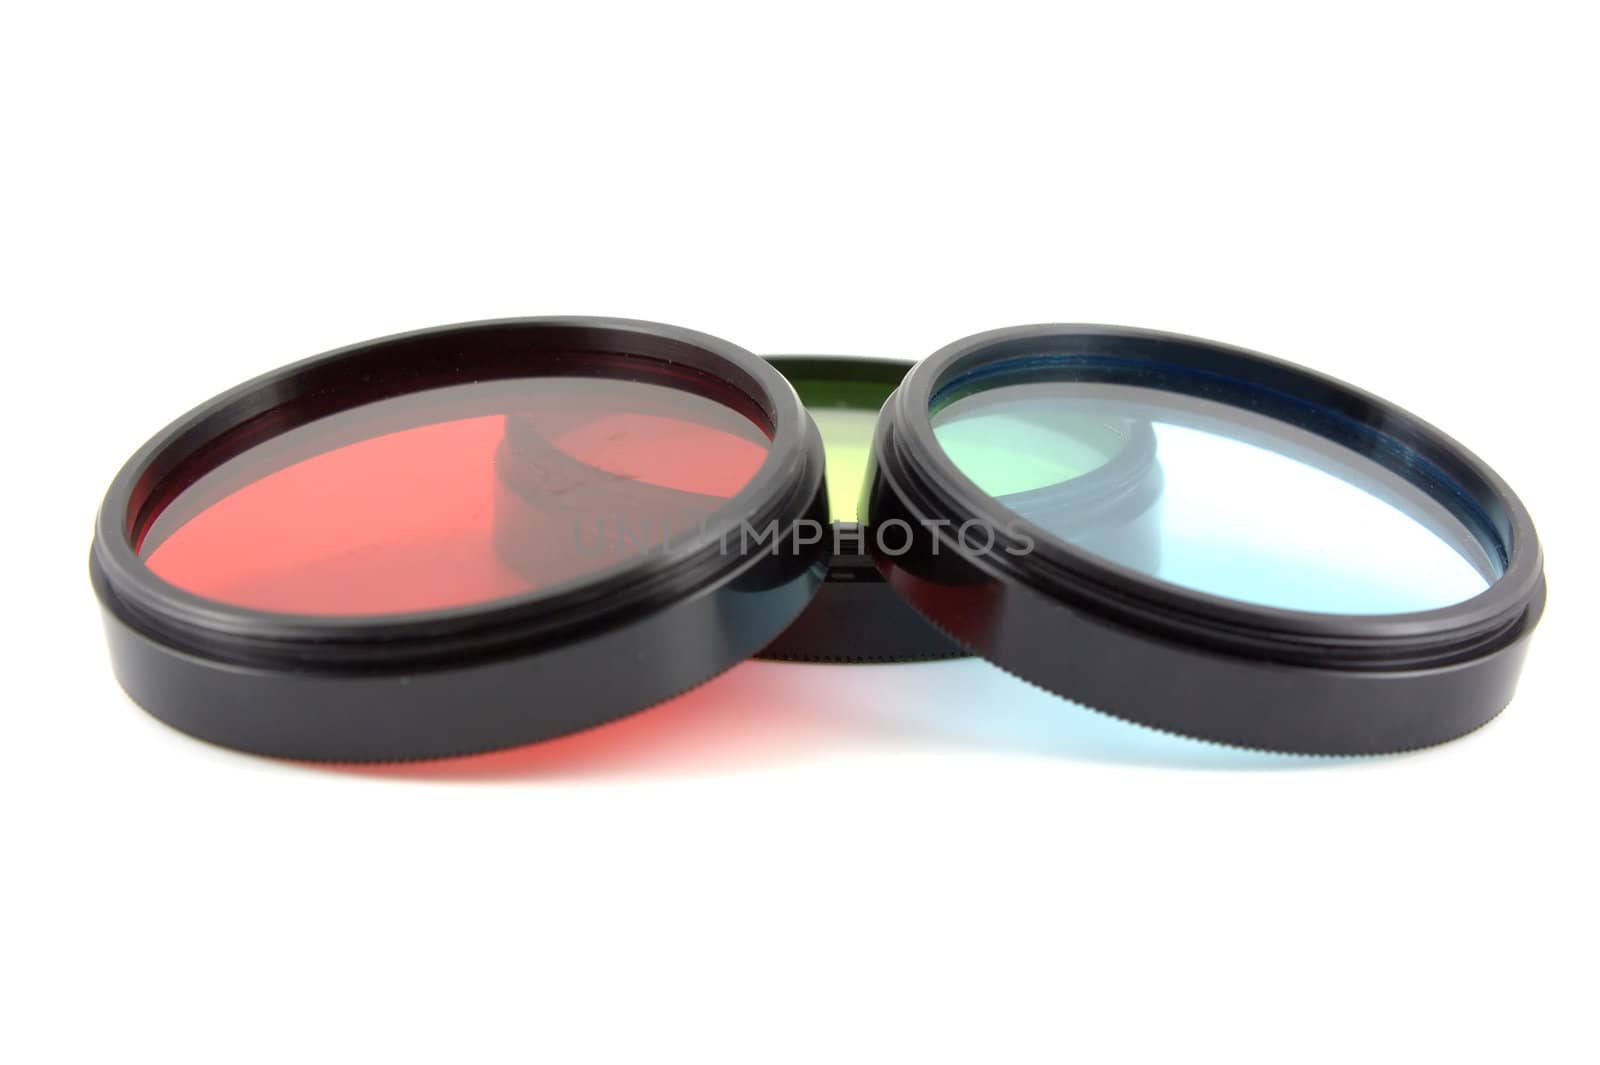 Filter for lenses by sergpet